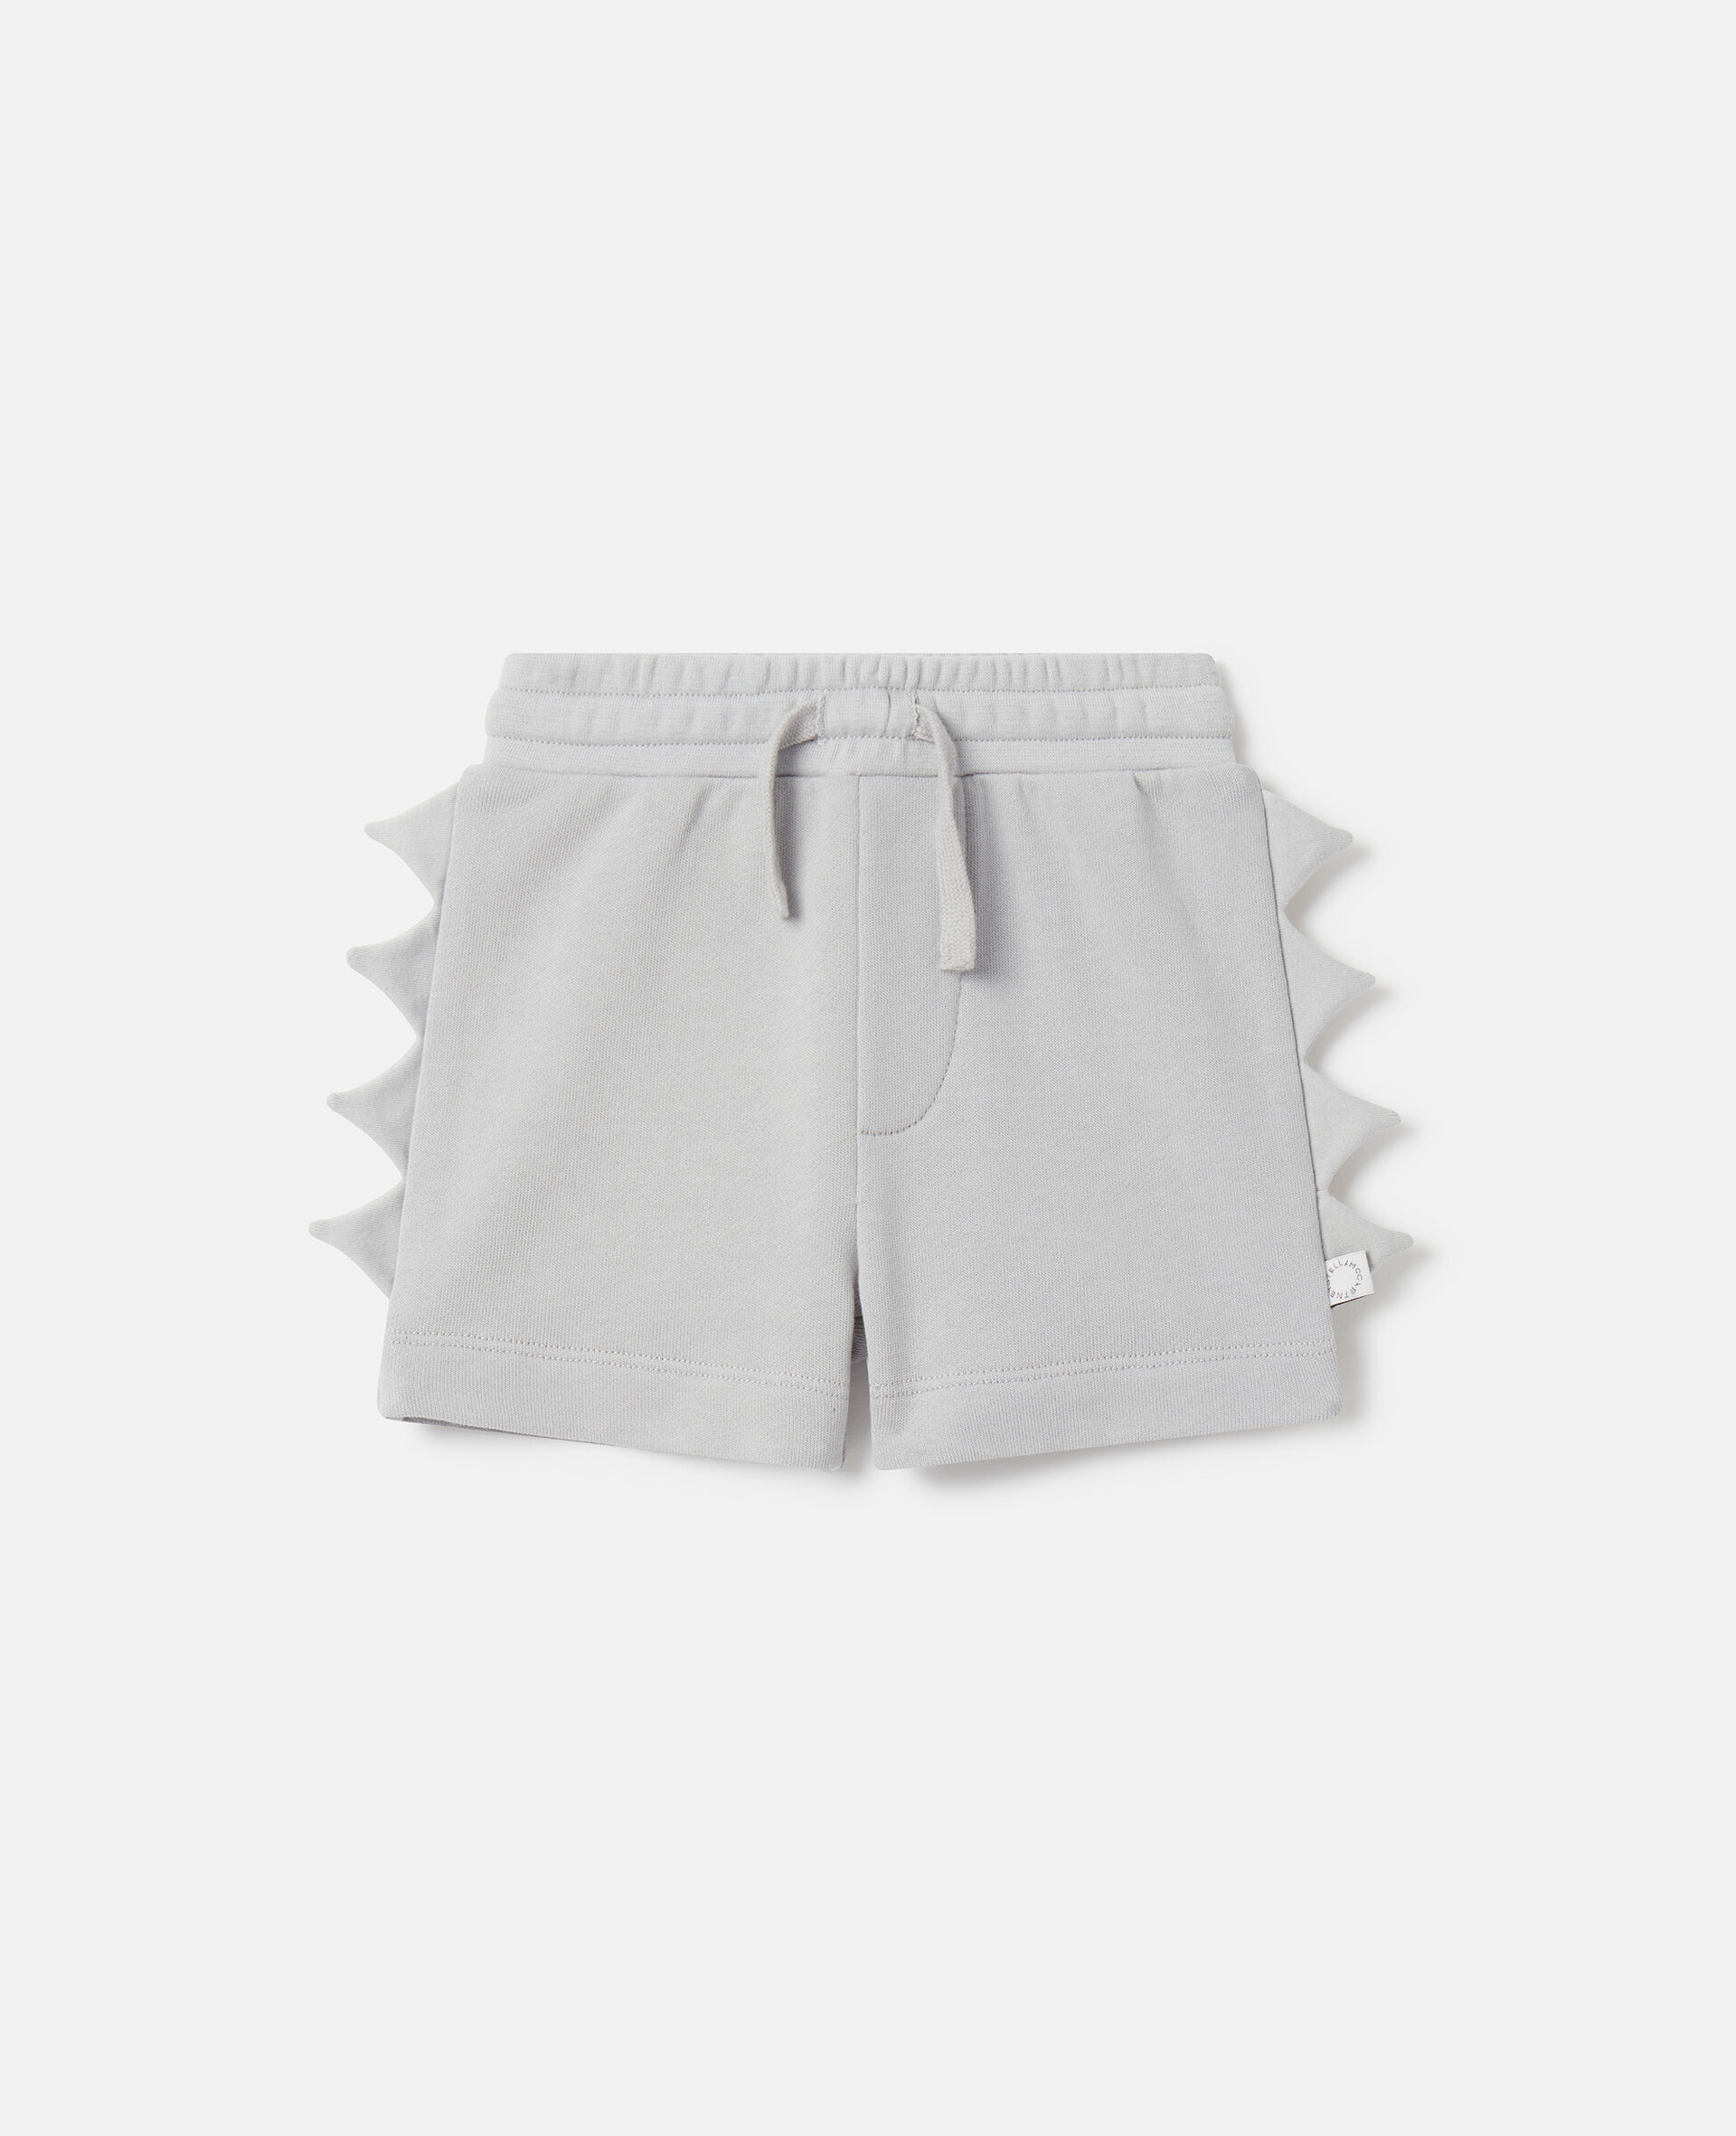 Shark Fin Spike Shorts-Gris-medium